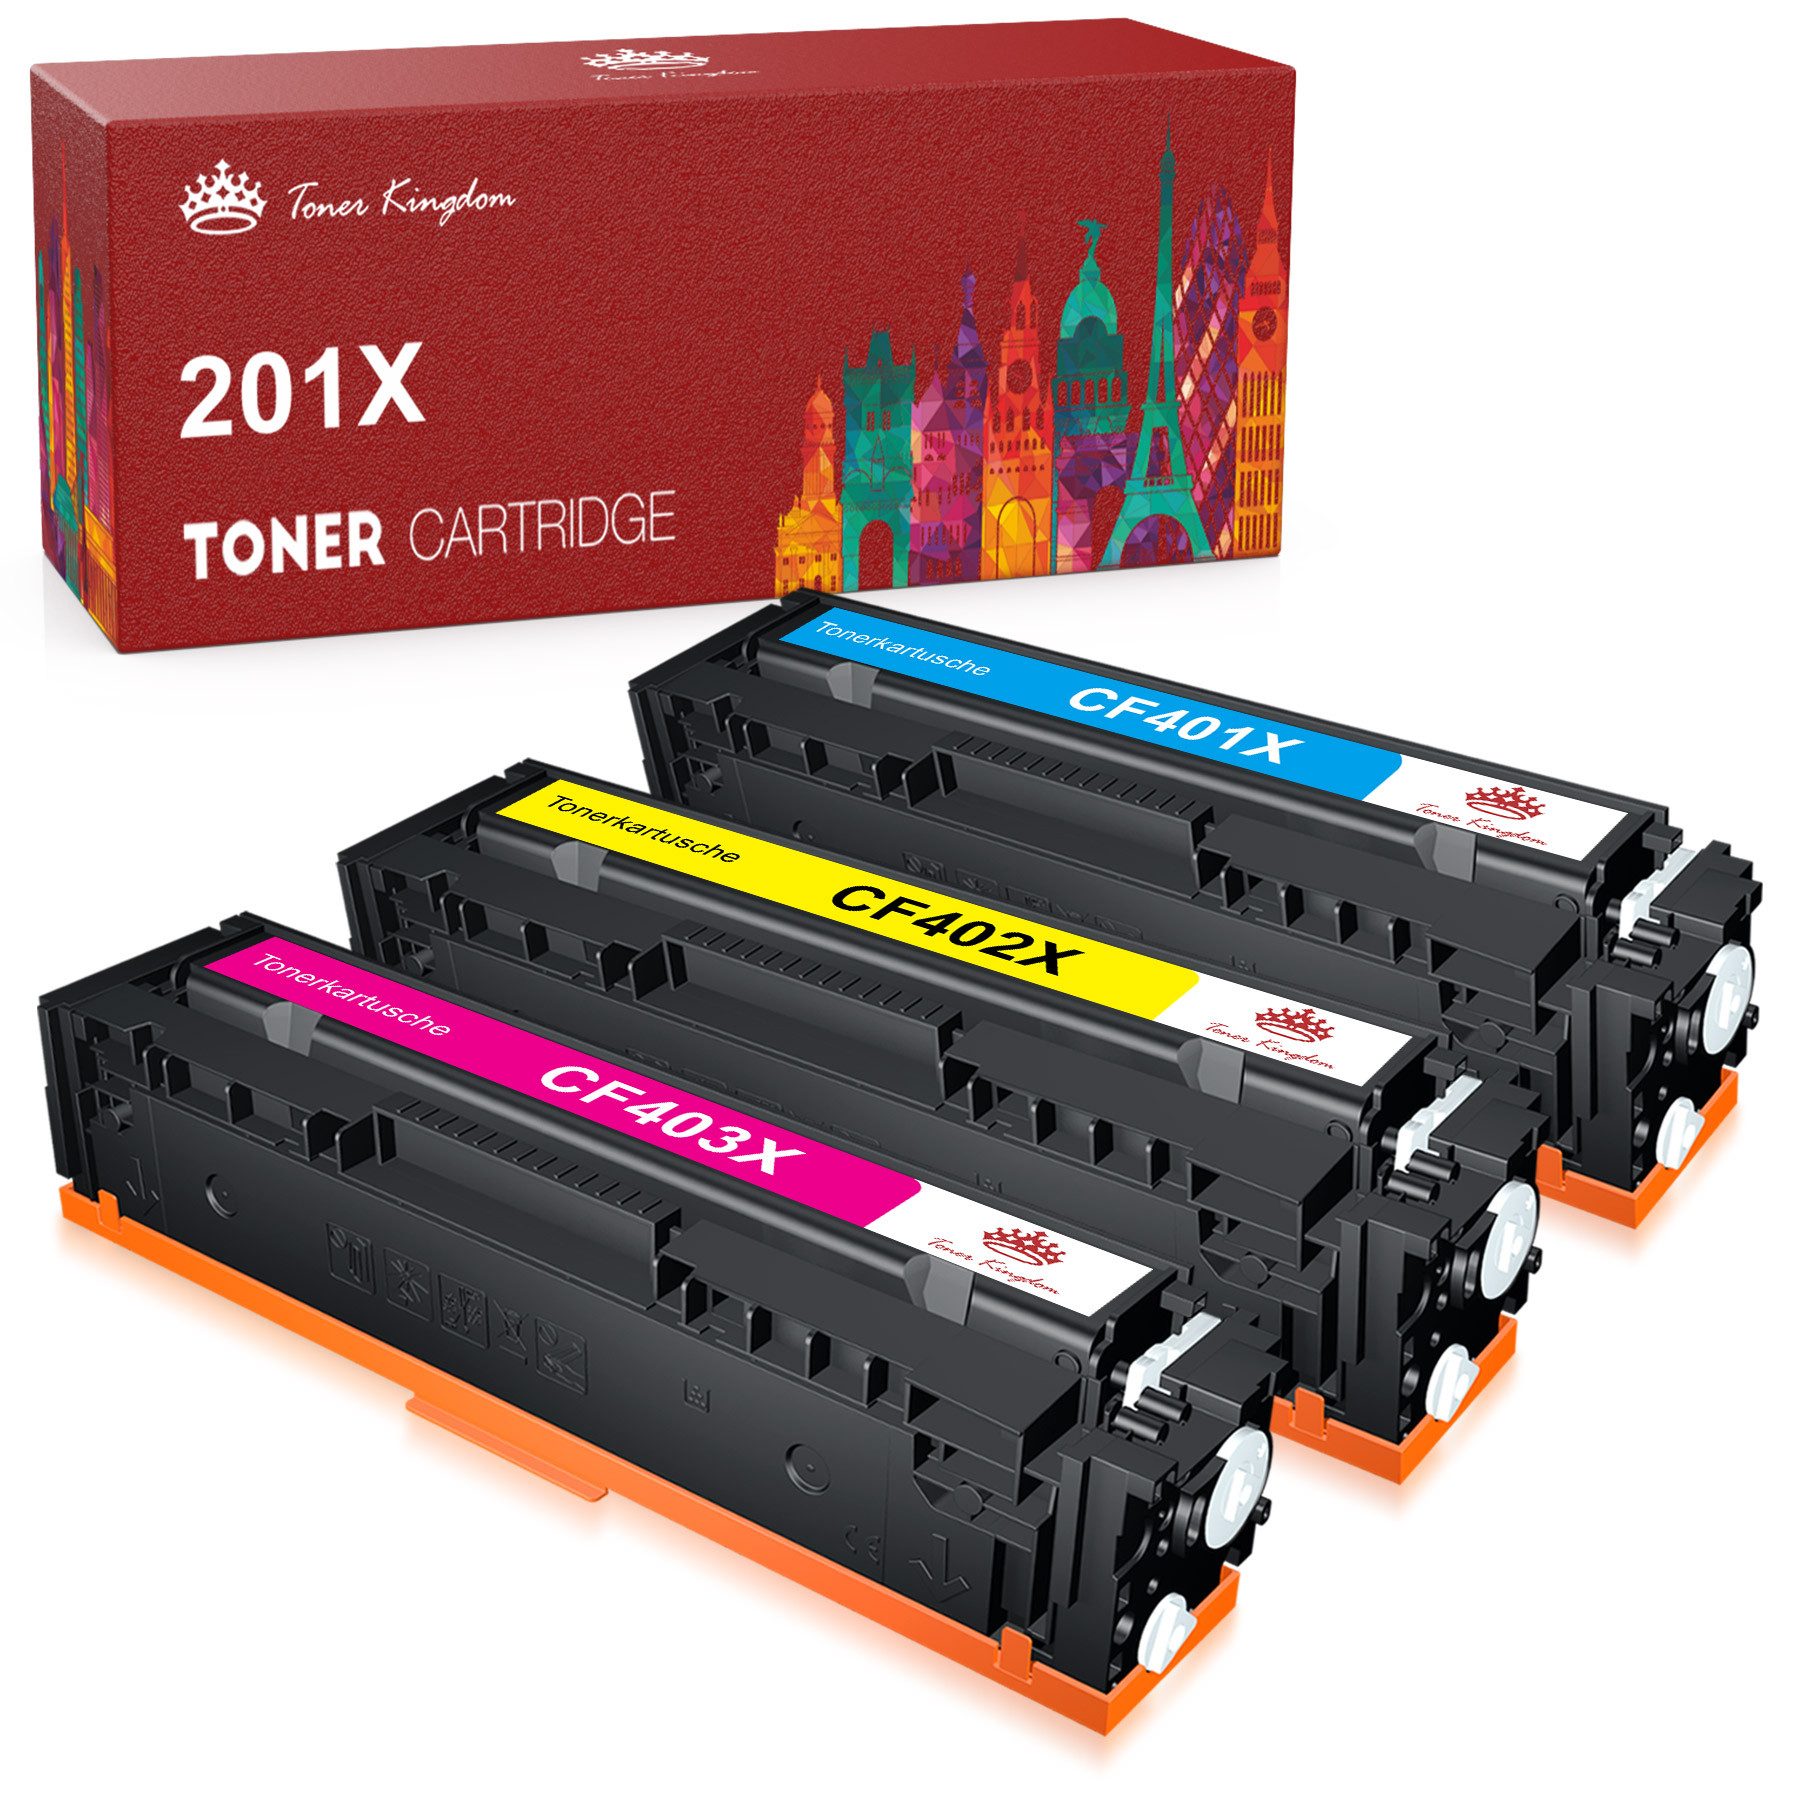 Toner Kingdom Tonerpatrone 3er-pack Kompatible für HP CF400X 201X, (Color LaserJet Pro MFP M277dw M277dw MFP M277n M274n M250 M270), Color LaserJet Pro M252dw M252n Drucker